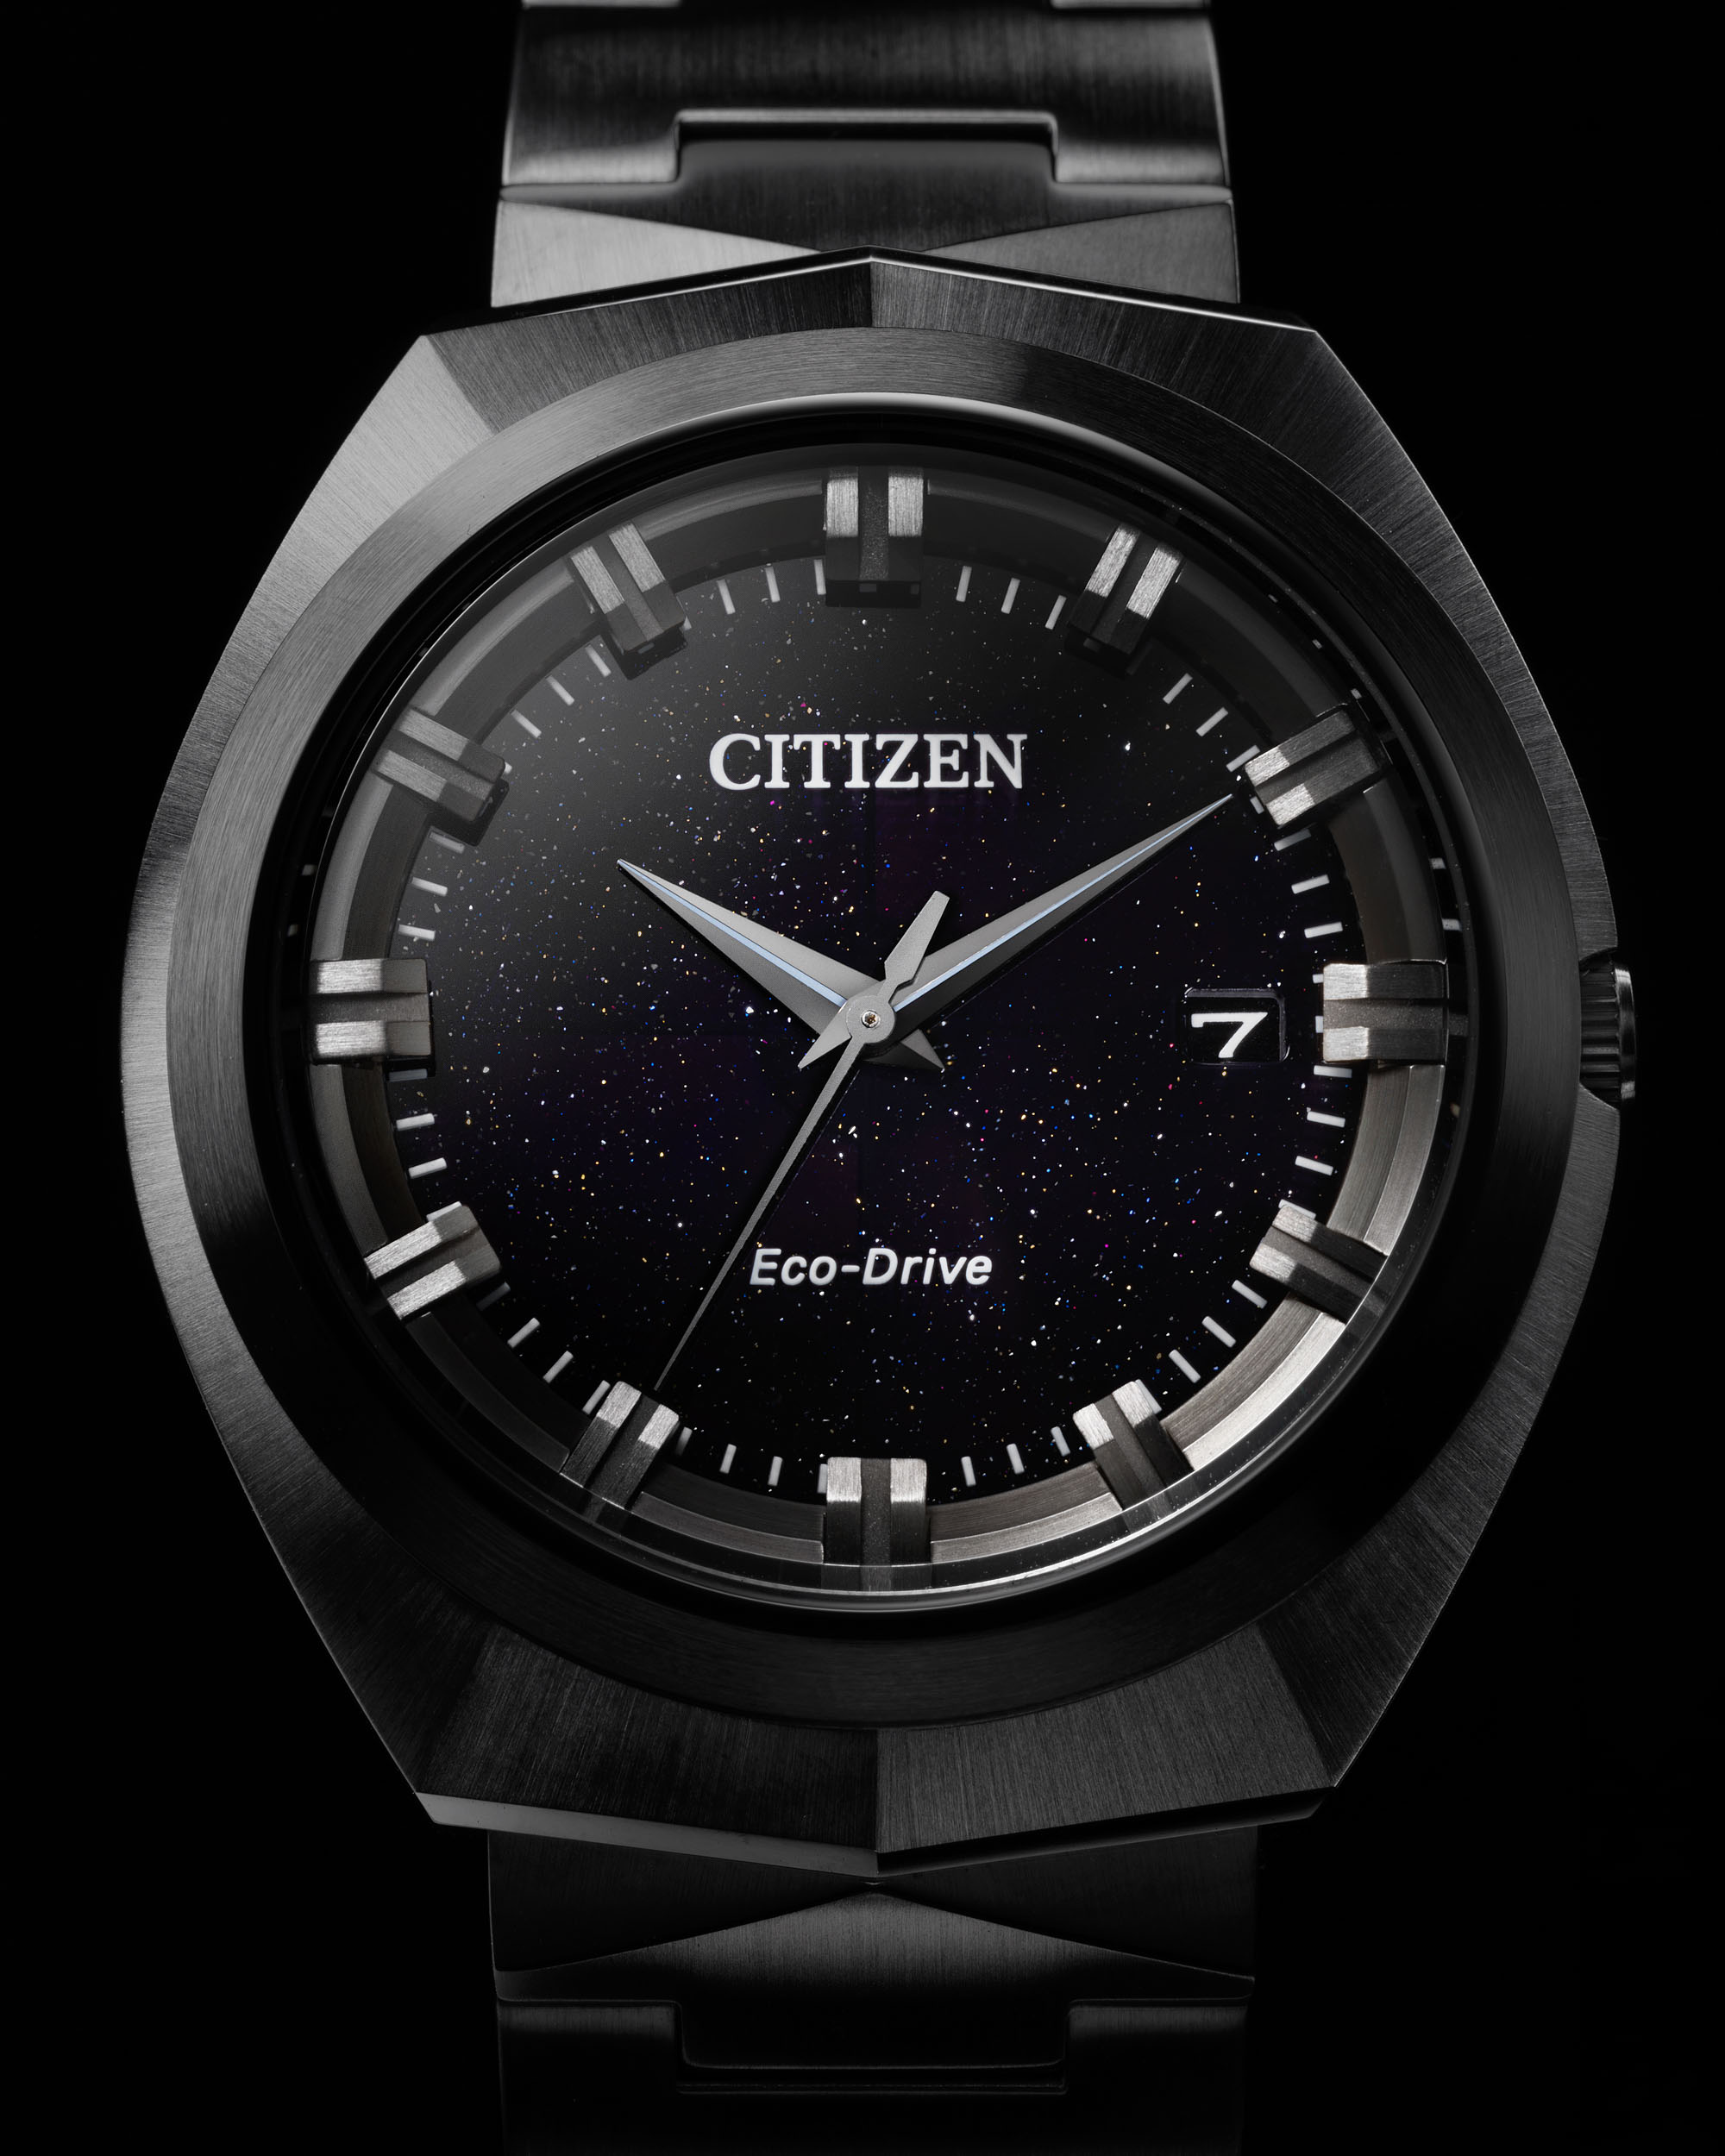 Citizen выпускает самые совершенные часы Eco-Drive на сегодняшний день